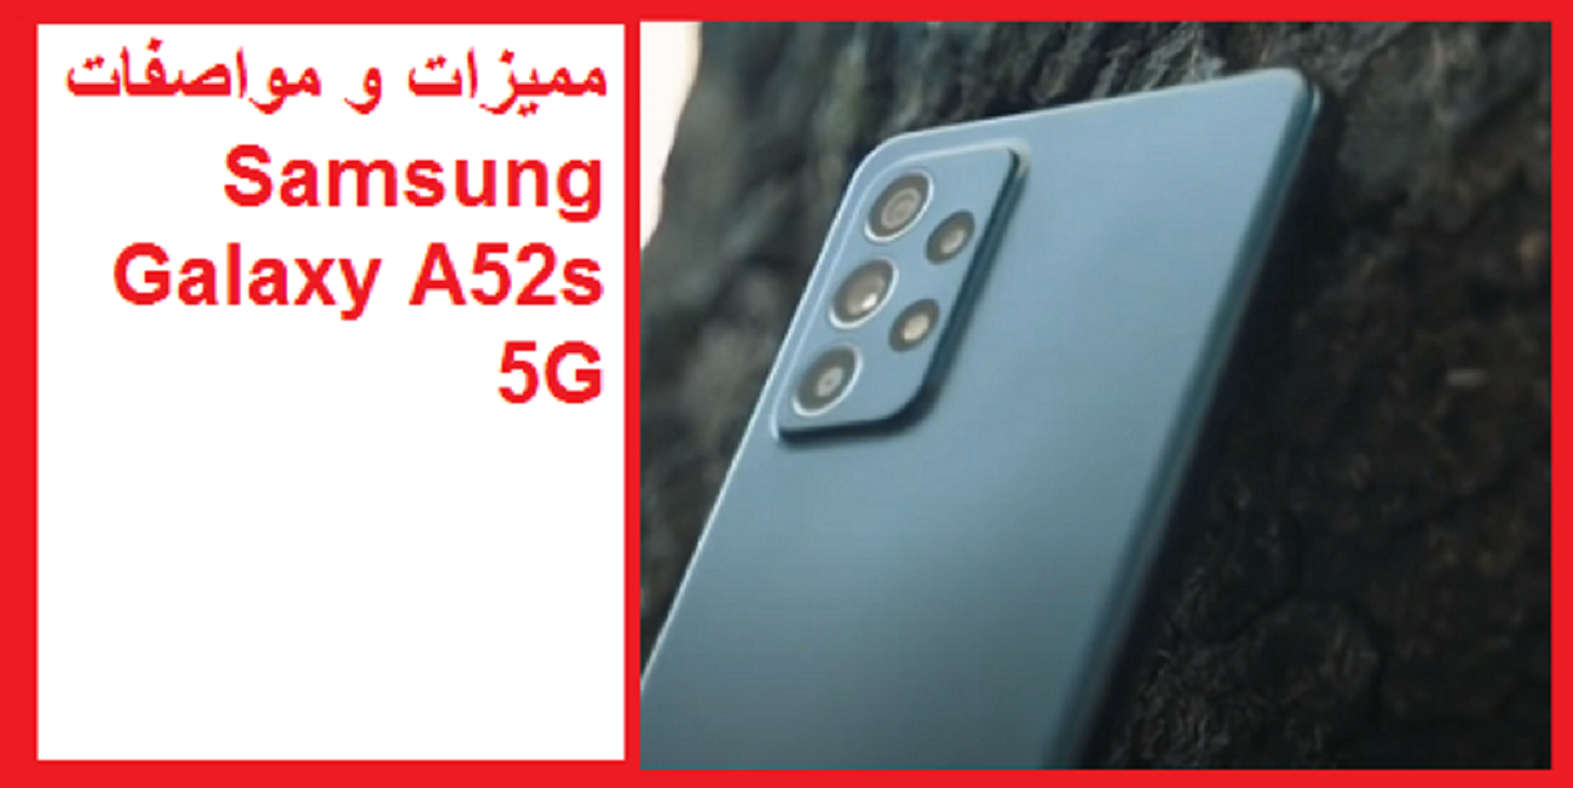 سامسونج تعلن عن هاتفها الجديد Samsung Galaxy A52s 5G